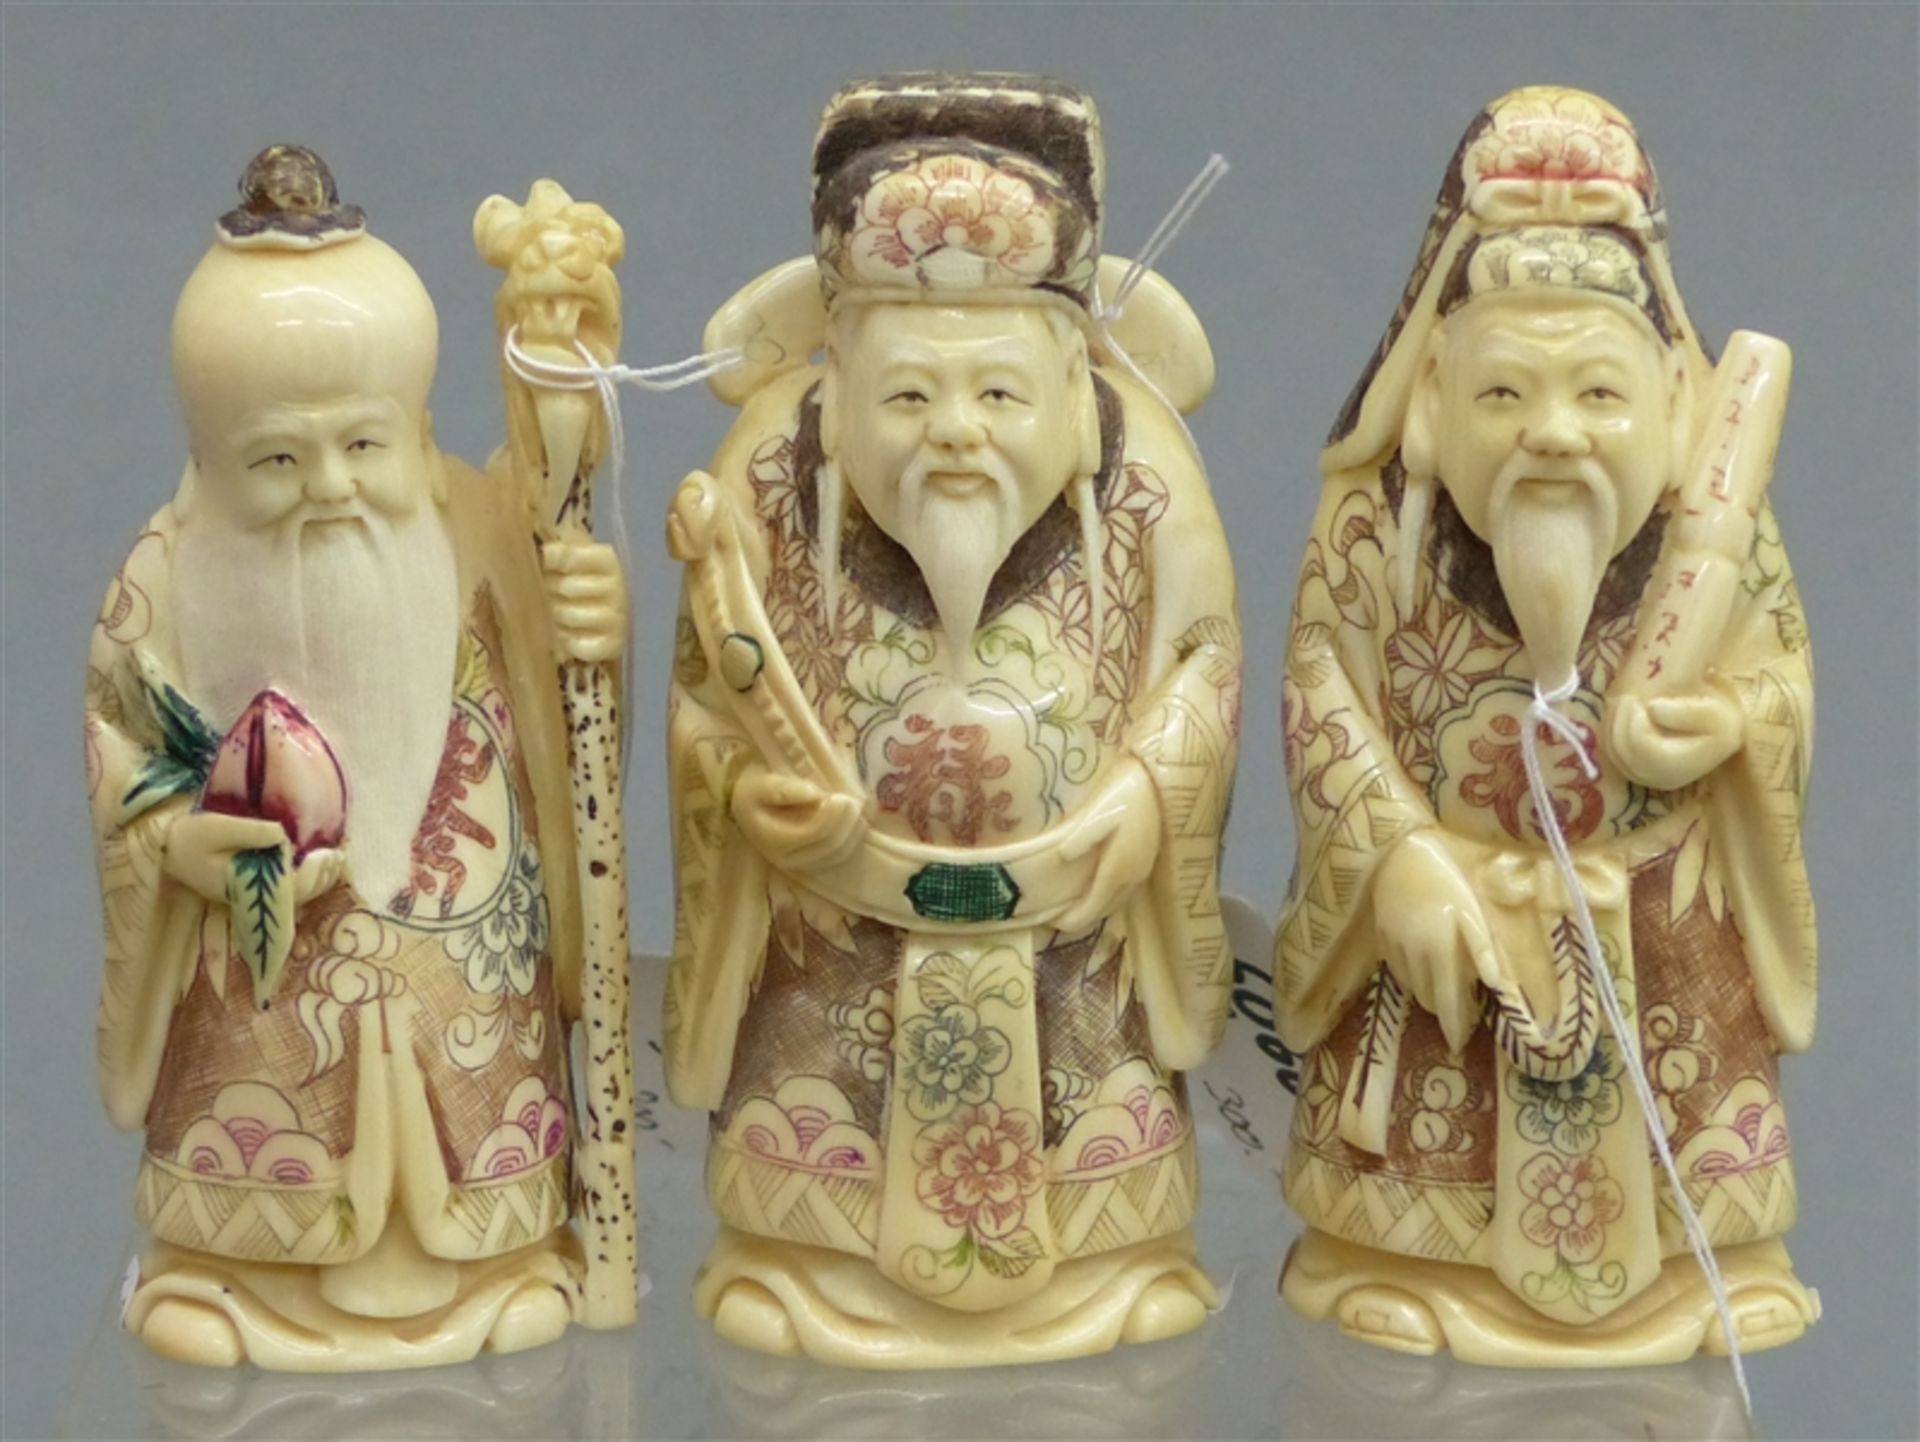 3 Elfenbeinschnitzereien, um 1900 China, "Drei Weise mit Bart", teilweise bemalt, signiert, h ca.